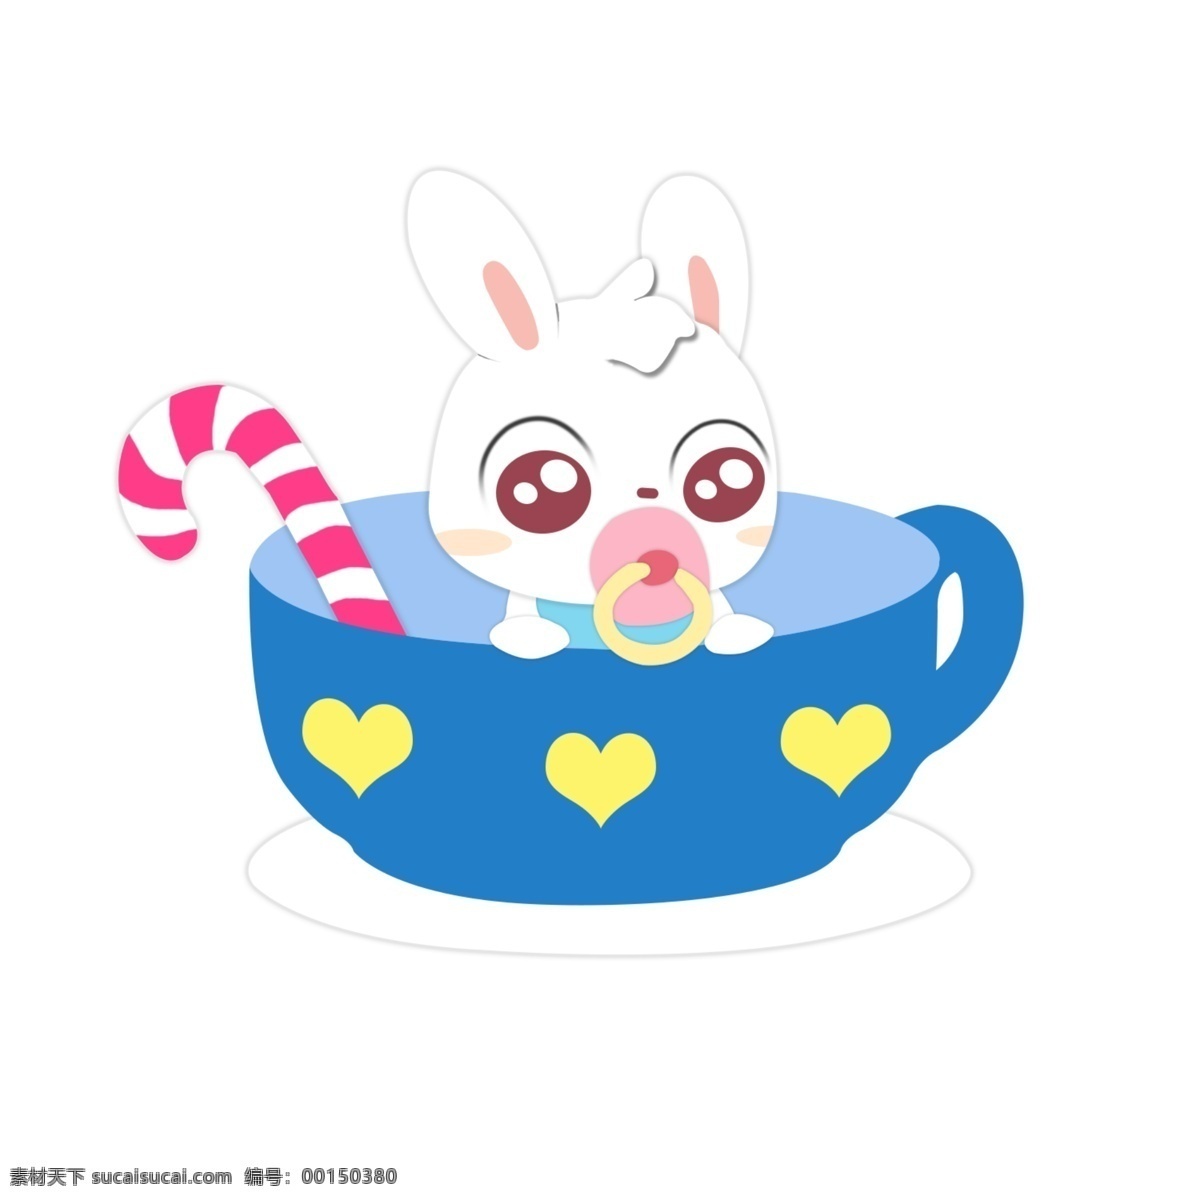 手绘 可爱 卡通 兔子 元素 蓝色 杯子 动物 贴图 奶嘴 萌萌兔 兔 盘子 萌兔